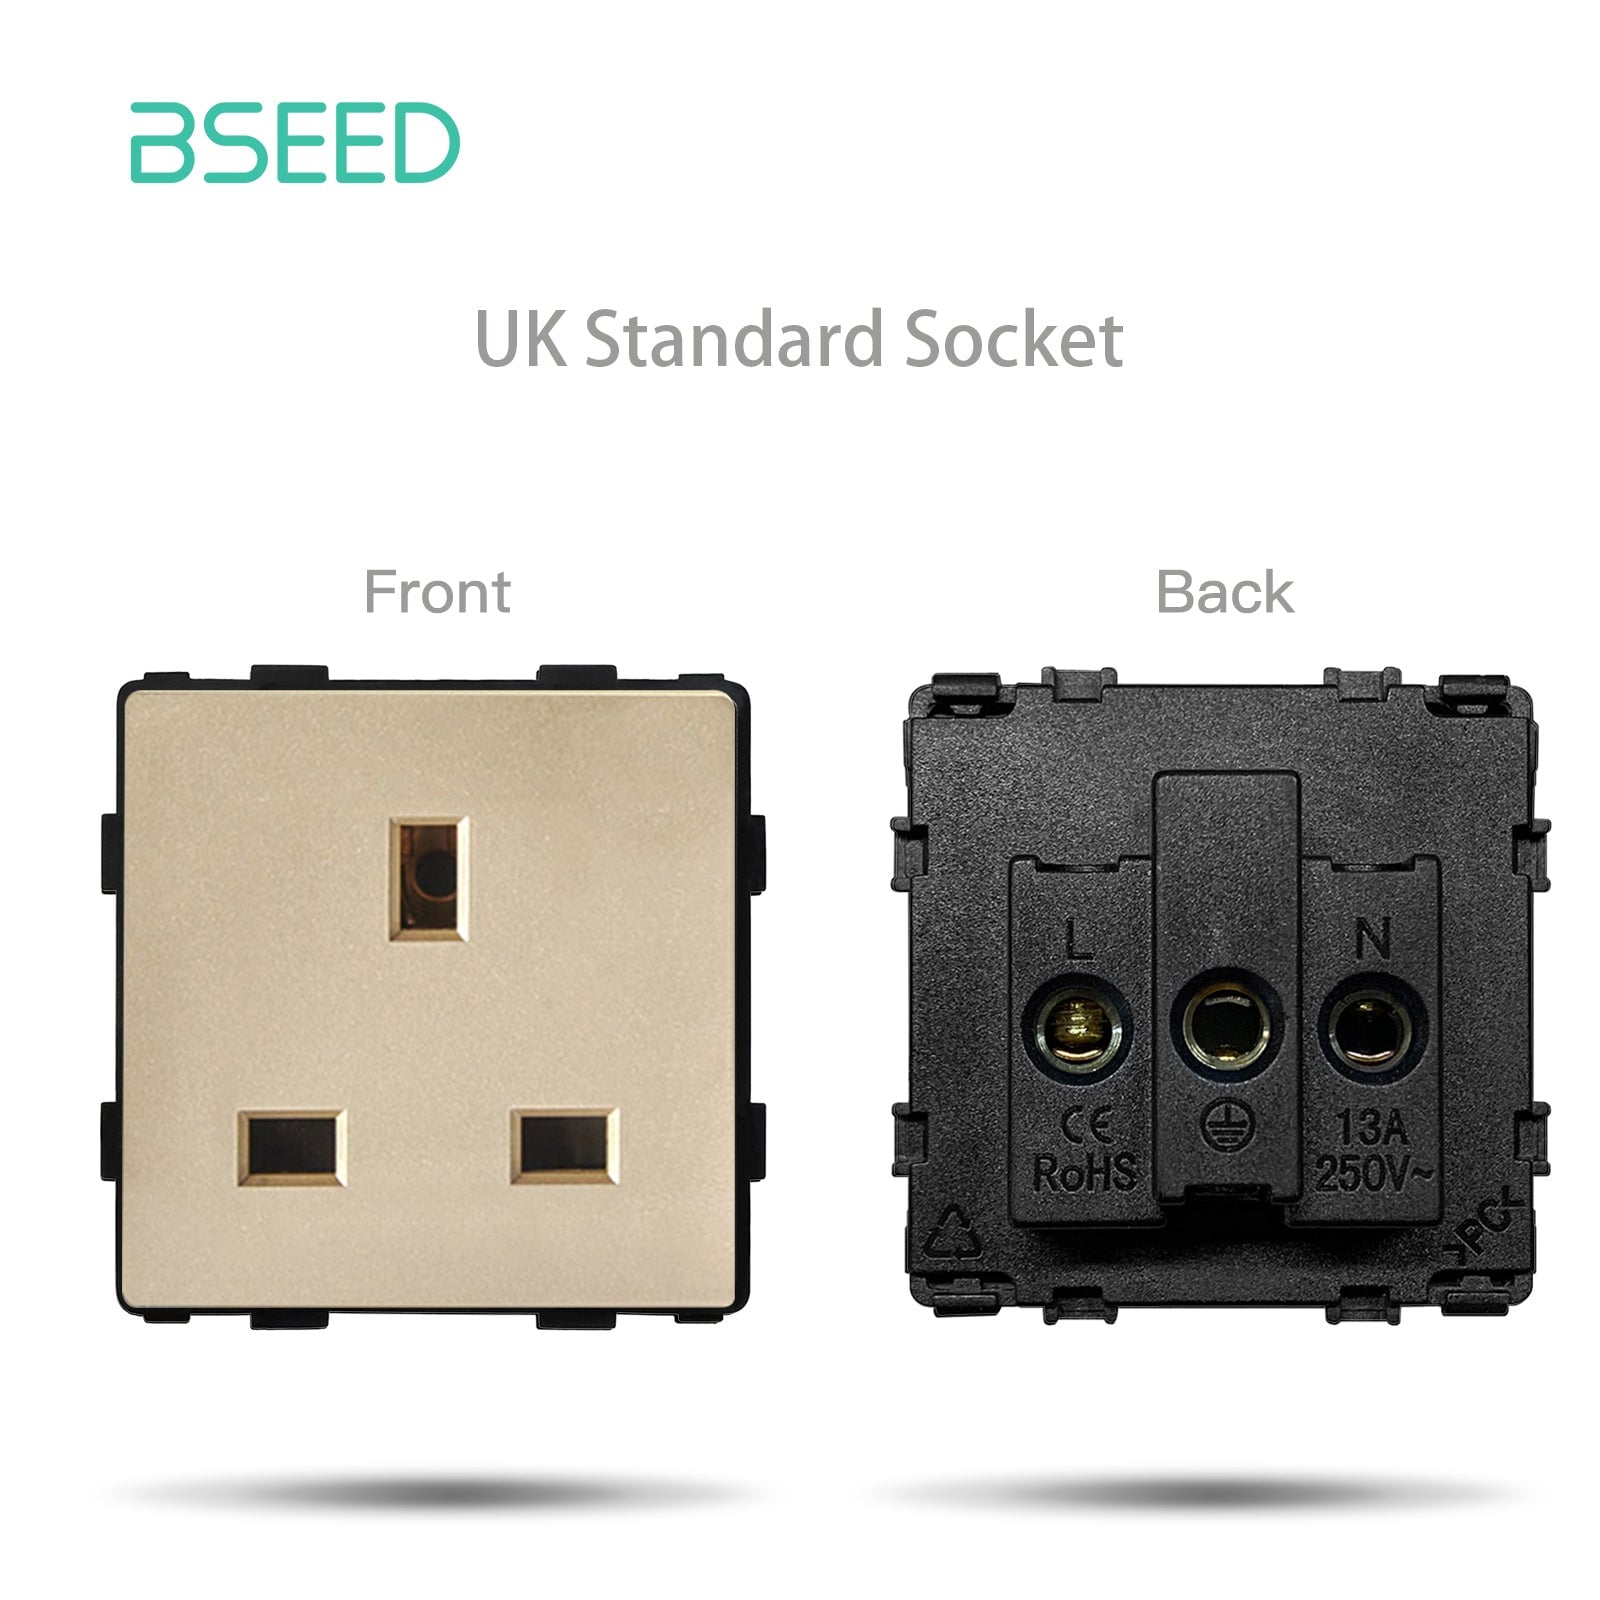 BSEED EU/FR/ UK/MF Standard Wall Socket Function Key Touch WiFi Zigbee type Power Outlets & Sockets Bseedswitch Gold UK Touch